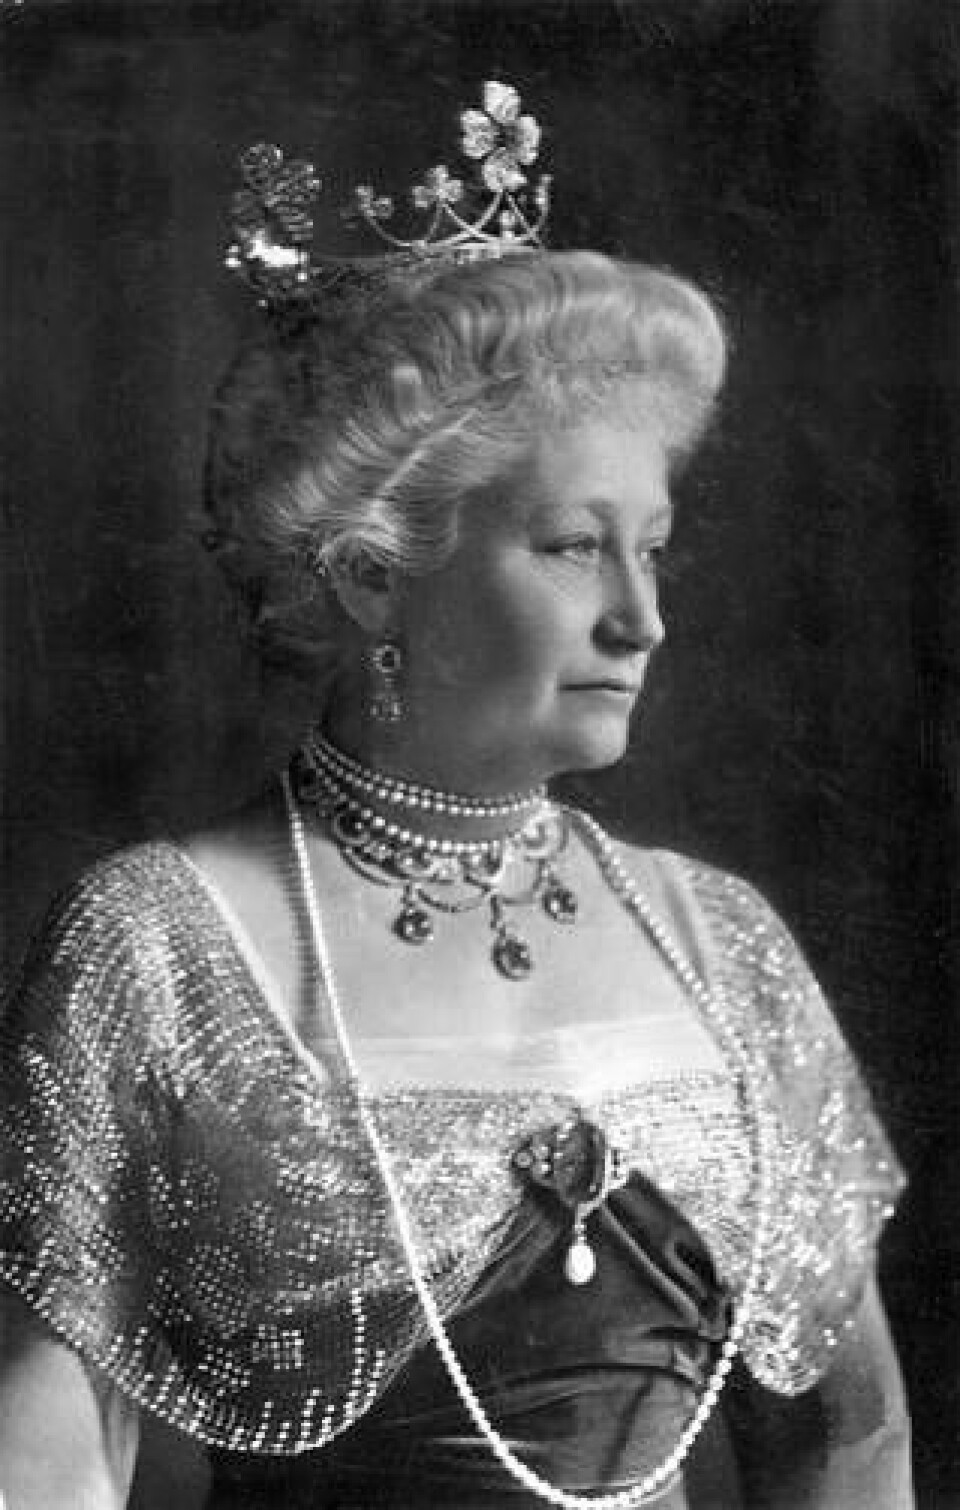 Kejsarinnan Auguste Victoria, gift med Wilhelm II.